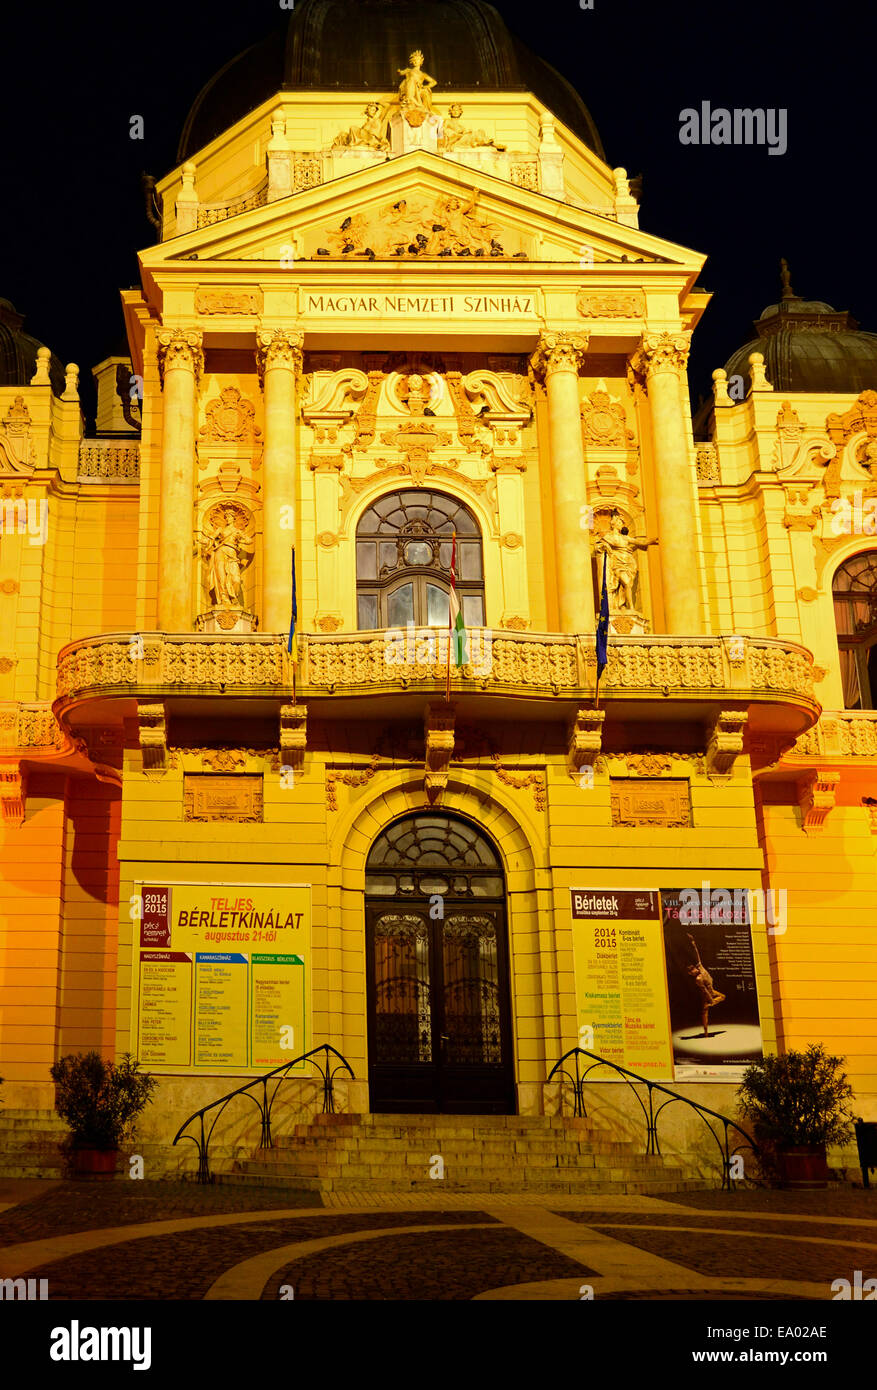 Ungheria Pecs Baranya County sud oltre Danubio. Teatro Nazionale - Nemzeti Szinhaz, riprese notturne Foto Stock